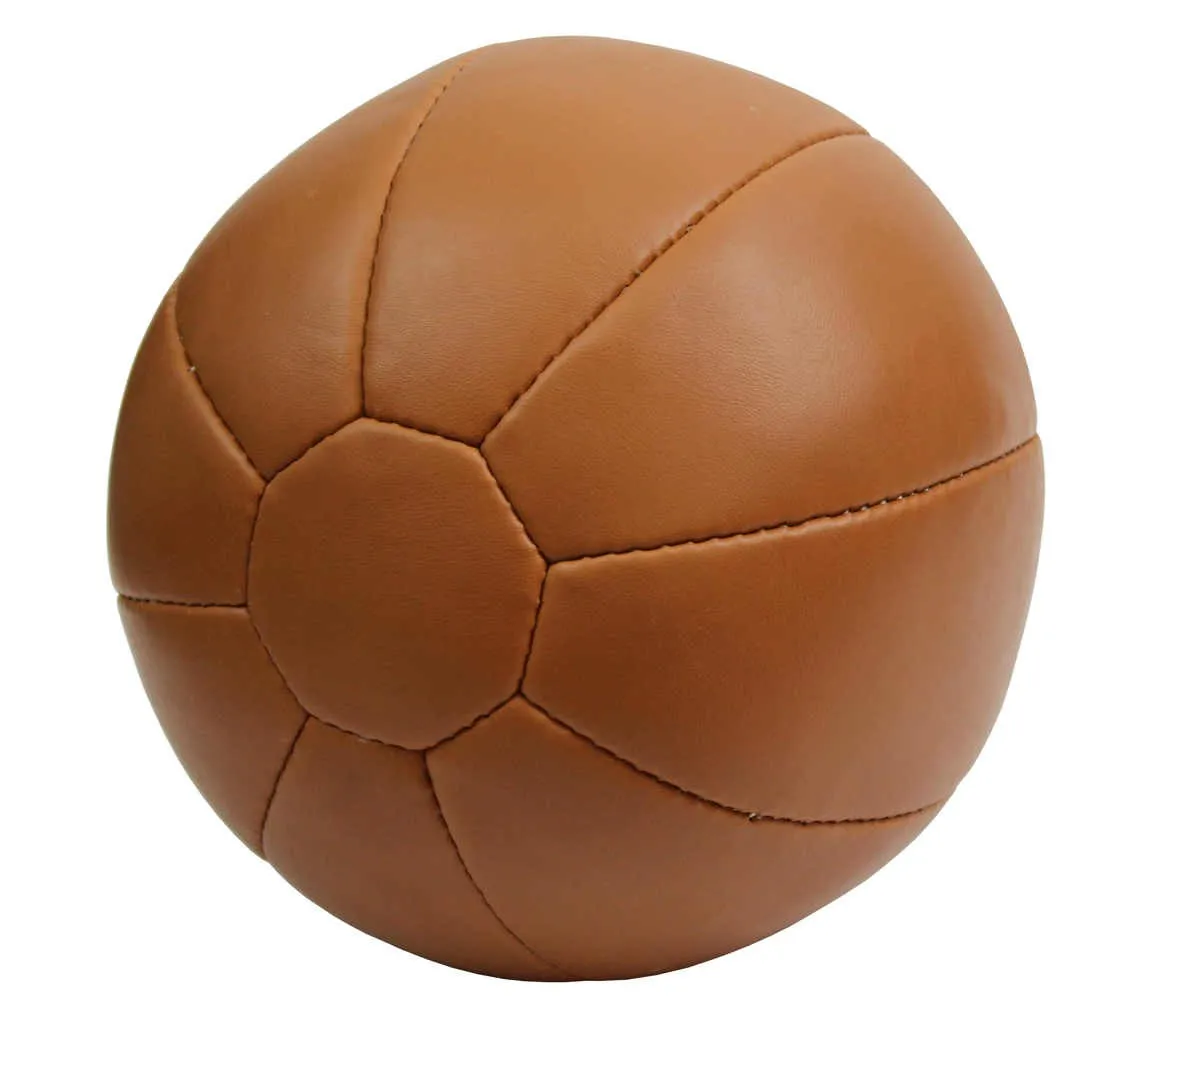 Medizinball 7 kg Kunstleder Slamball